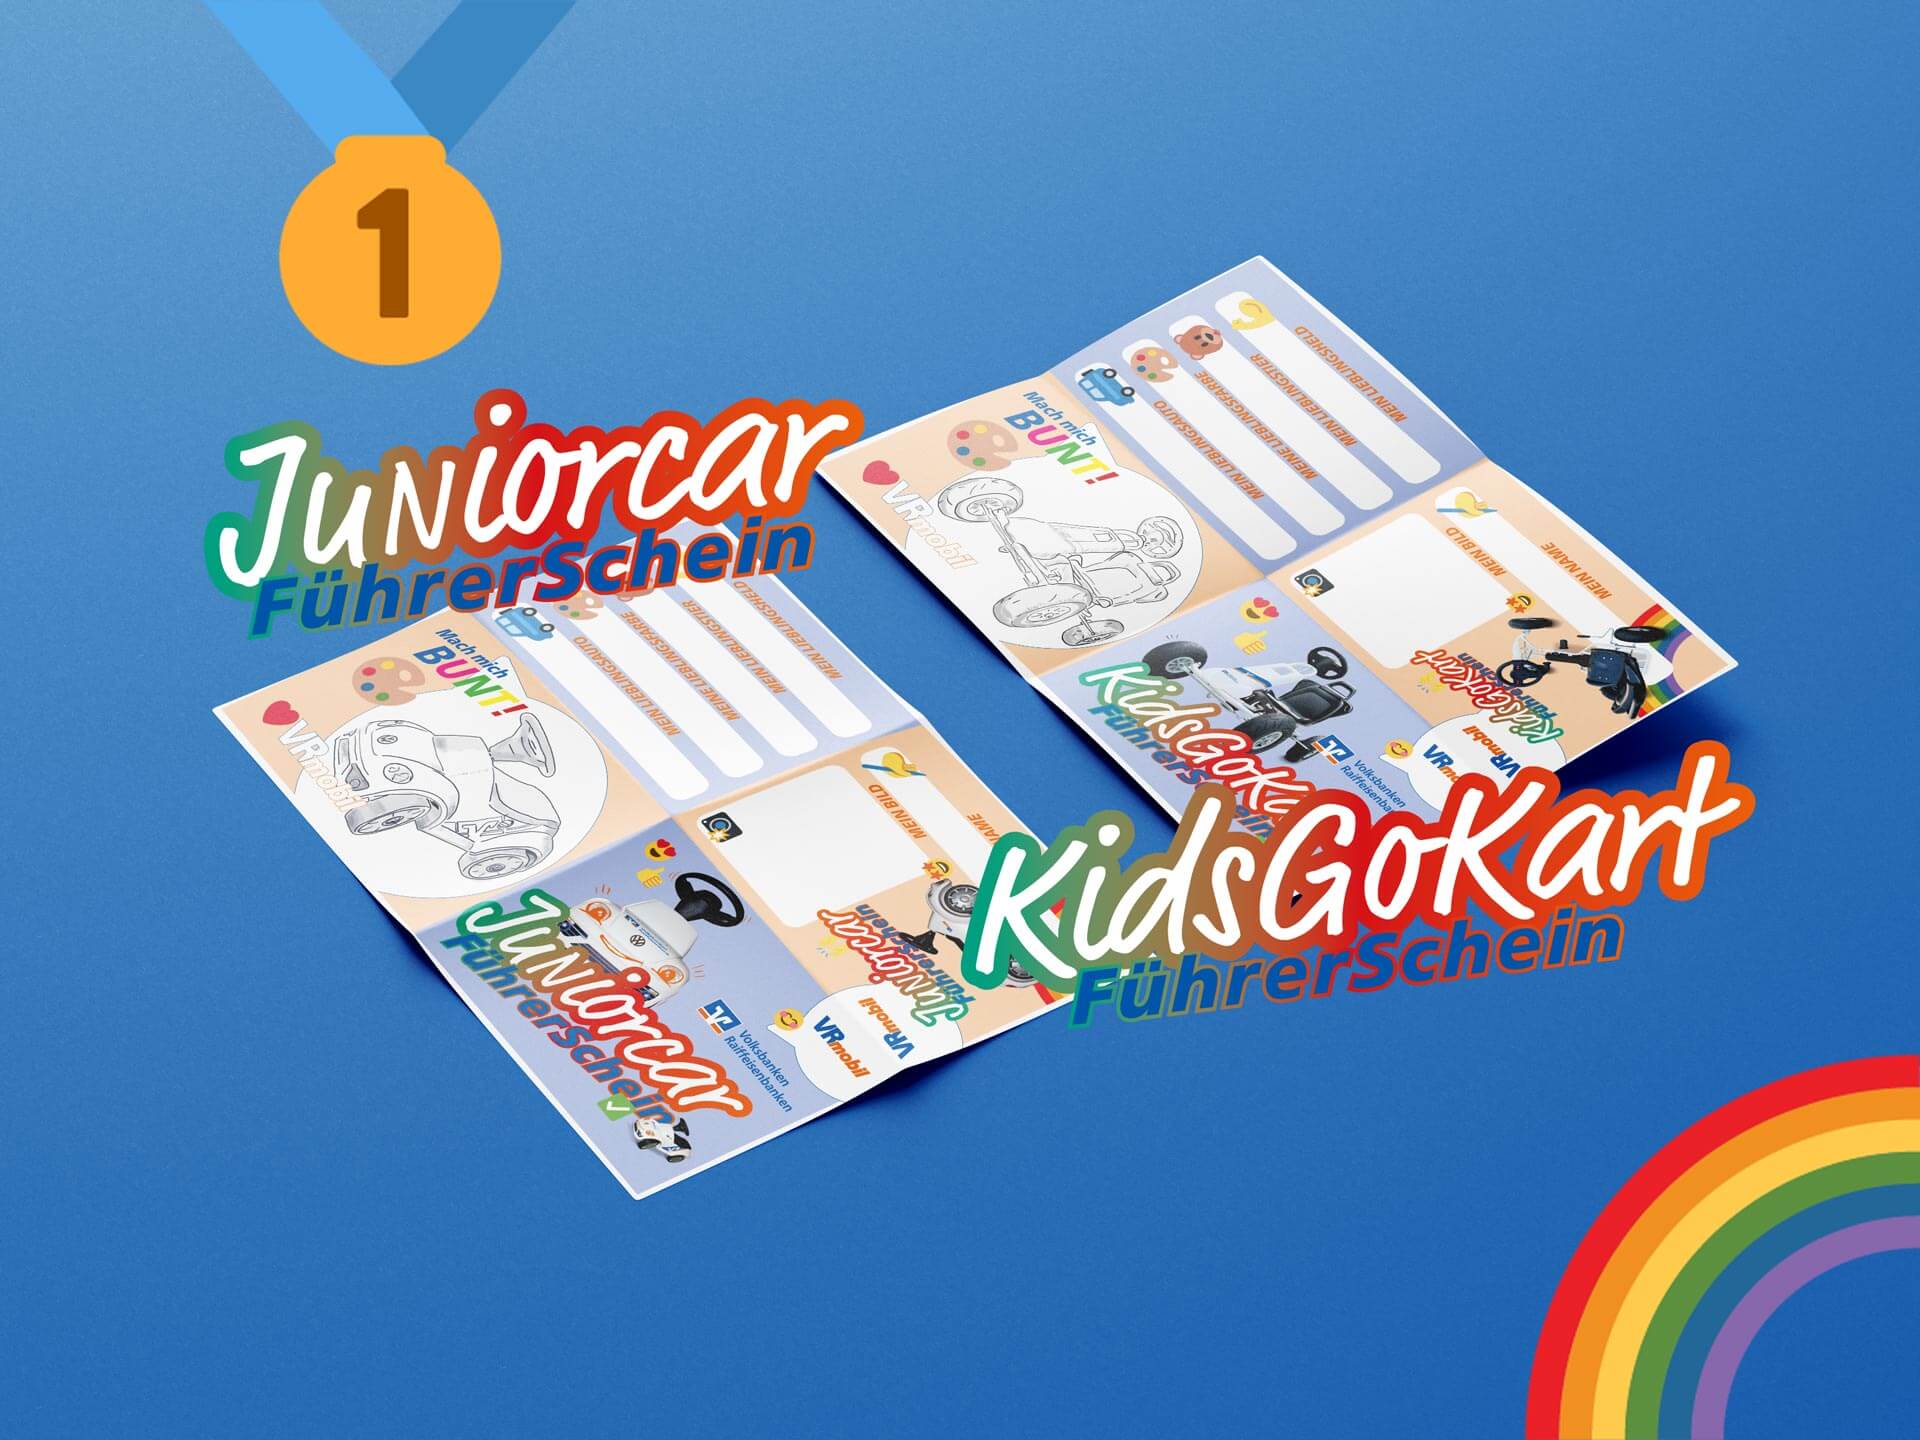 Juniorcar und KidsGoKart Führerschein mit Medaille und Regenbogen